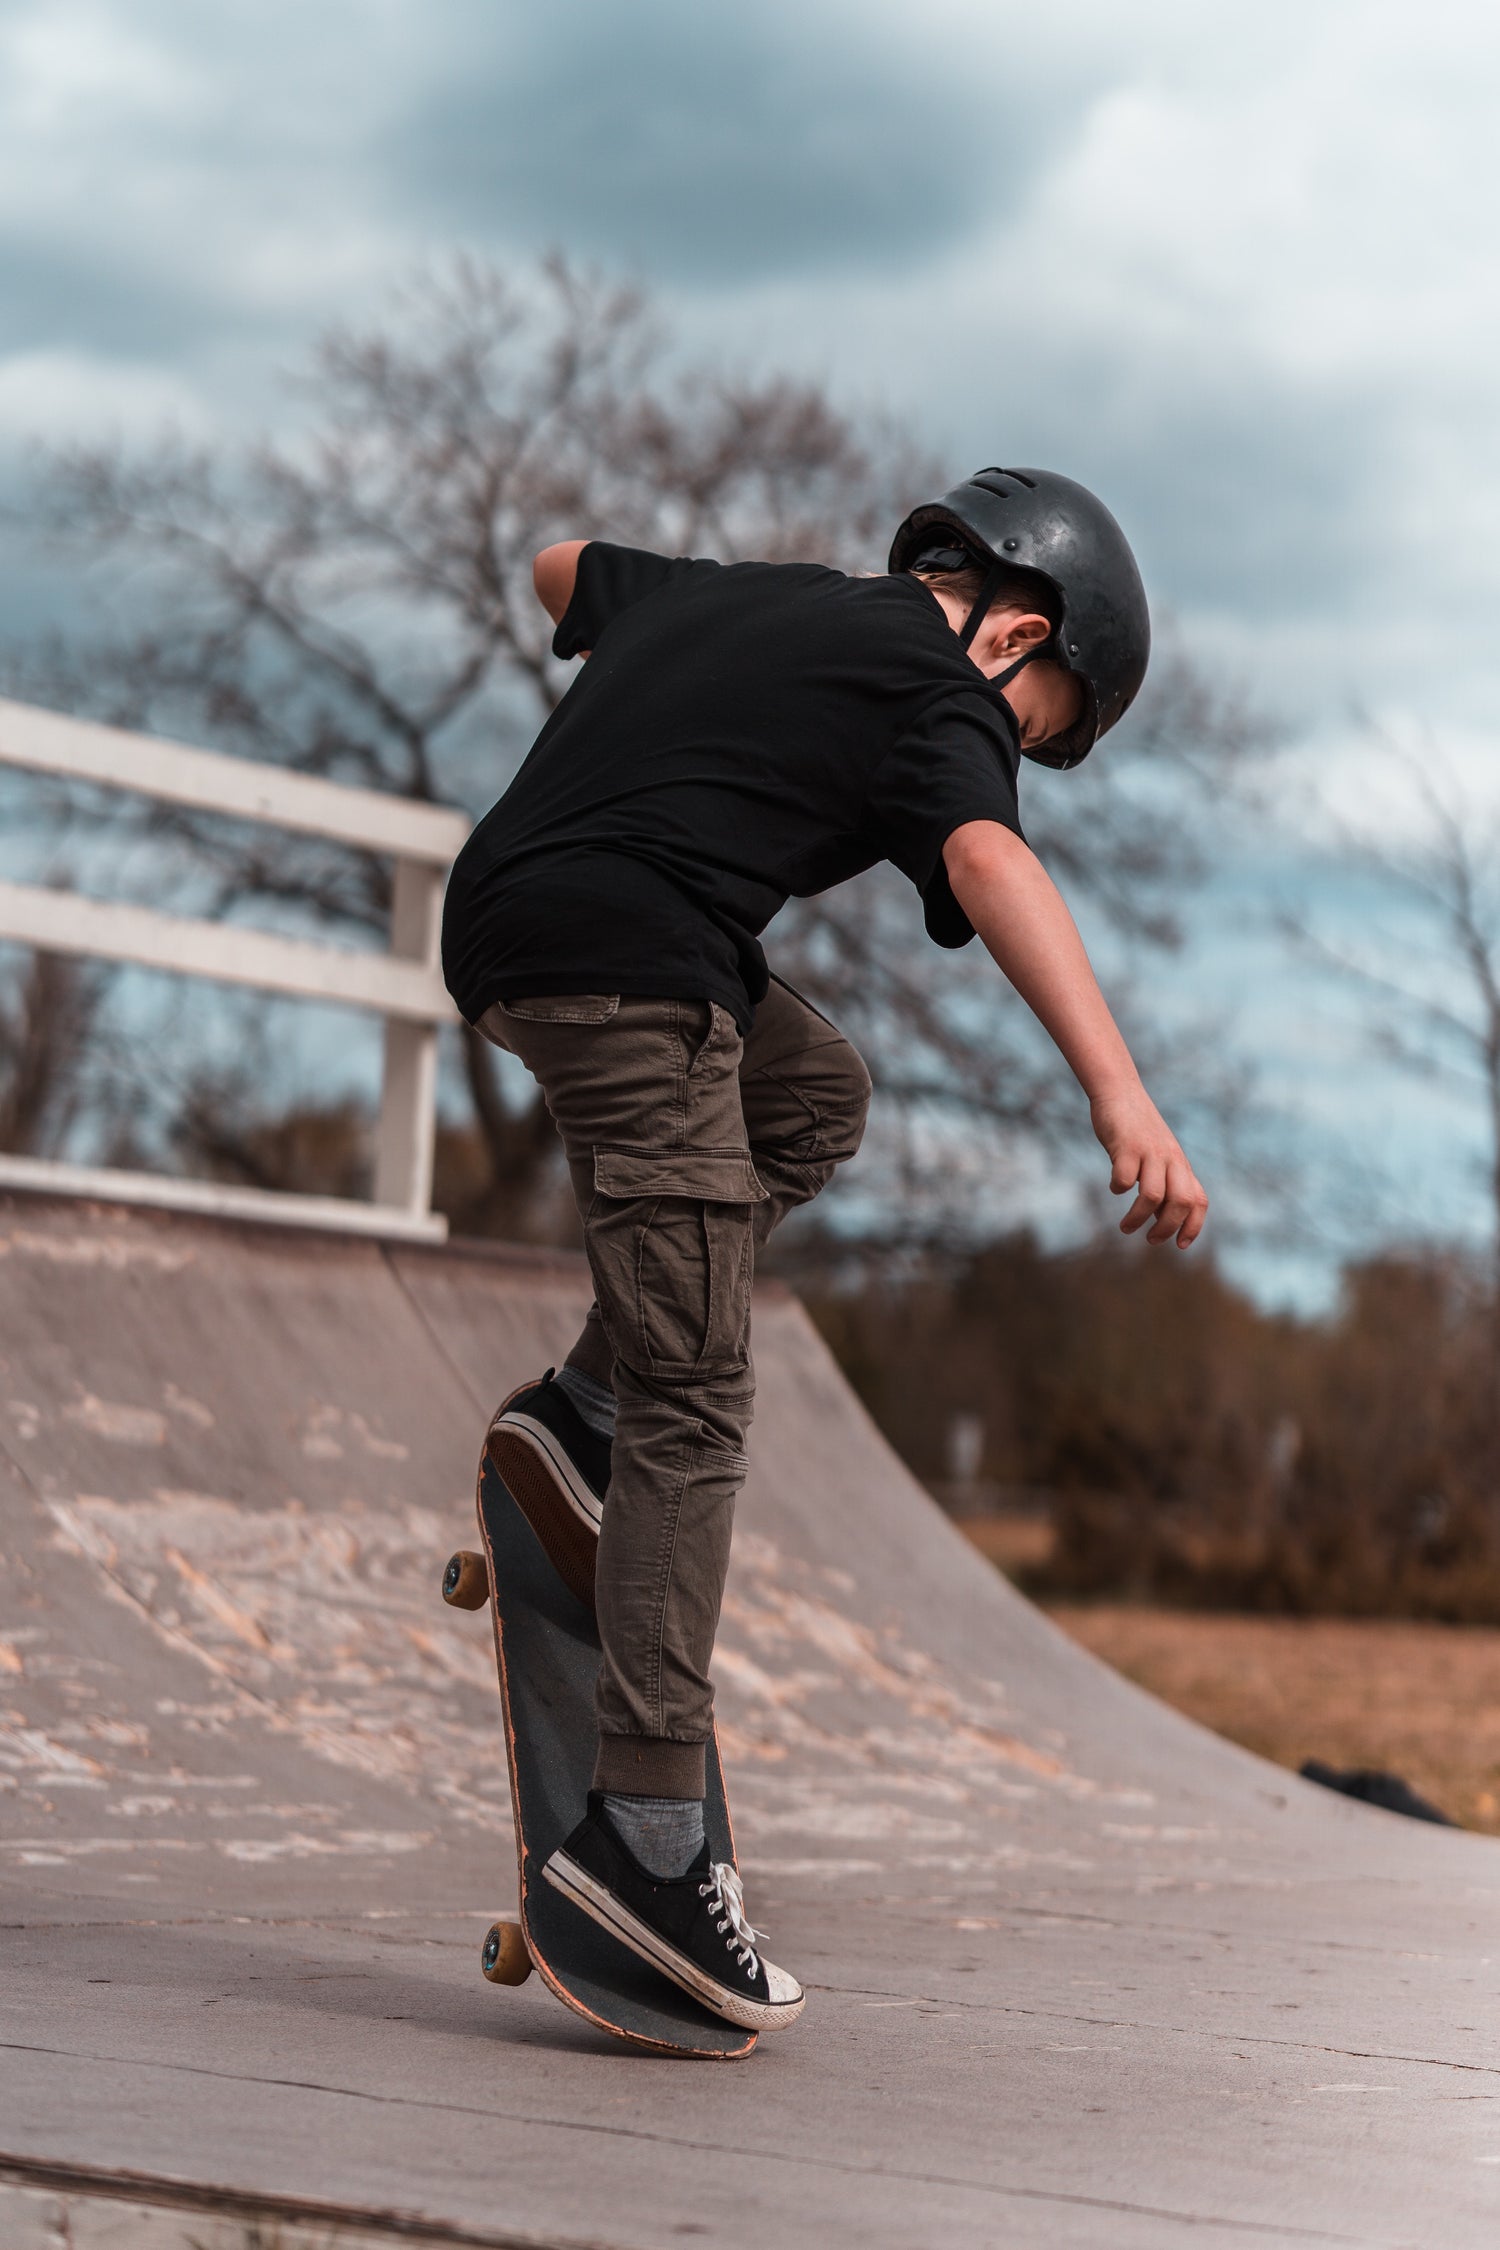 Best Kids Skateboards [A Comprehensive Guide]